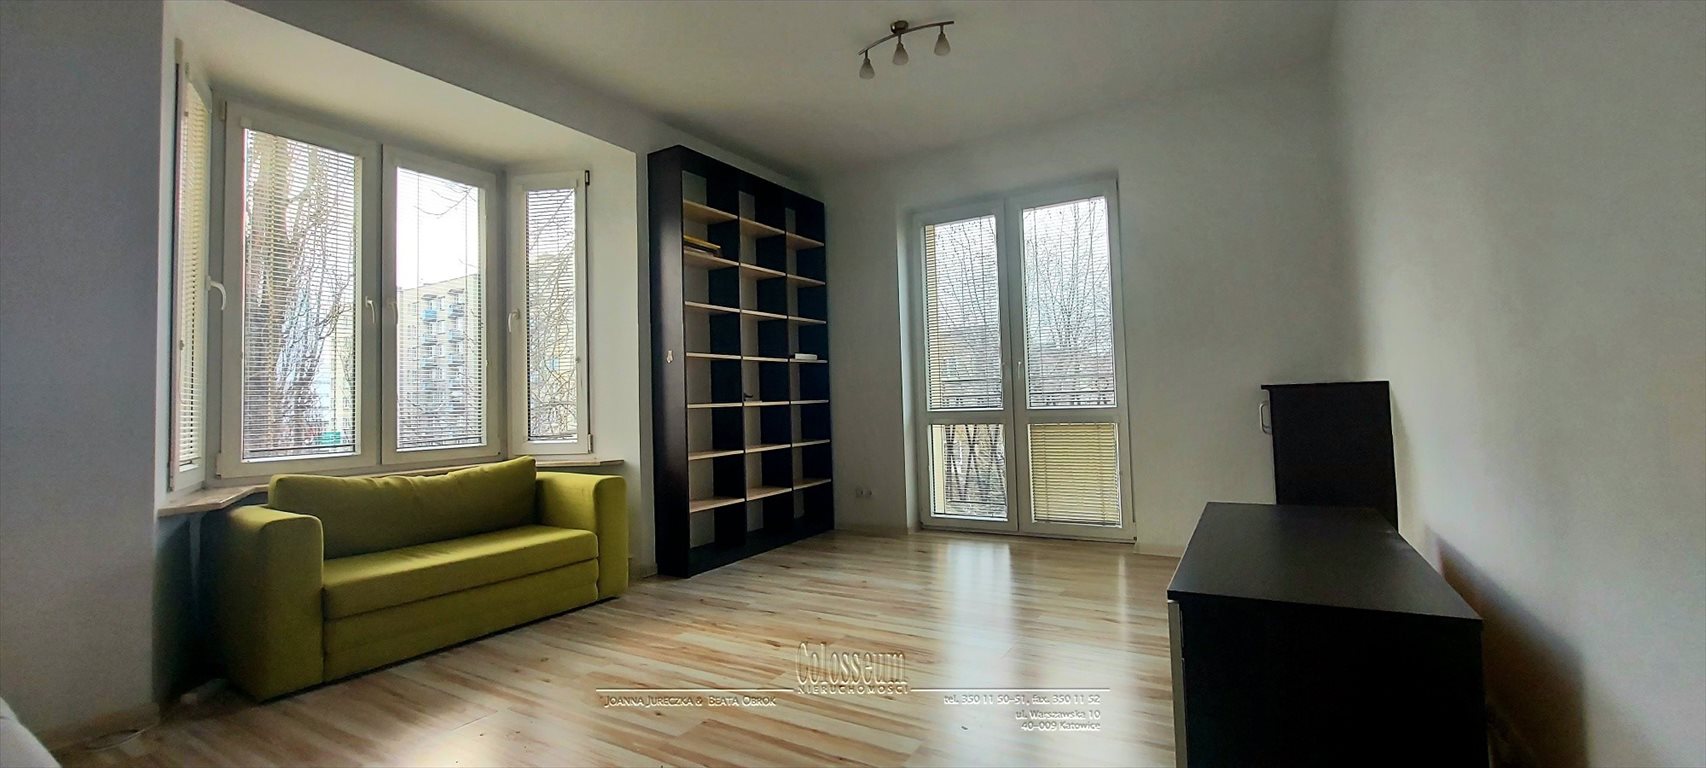 Mieszkanie dwupokojowe na sprzedaż Katowice, Koszutka, Sokolska  47m2 Foto 3